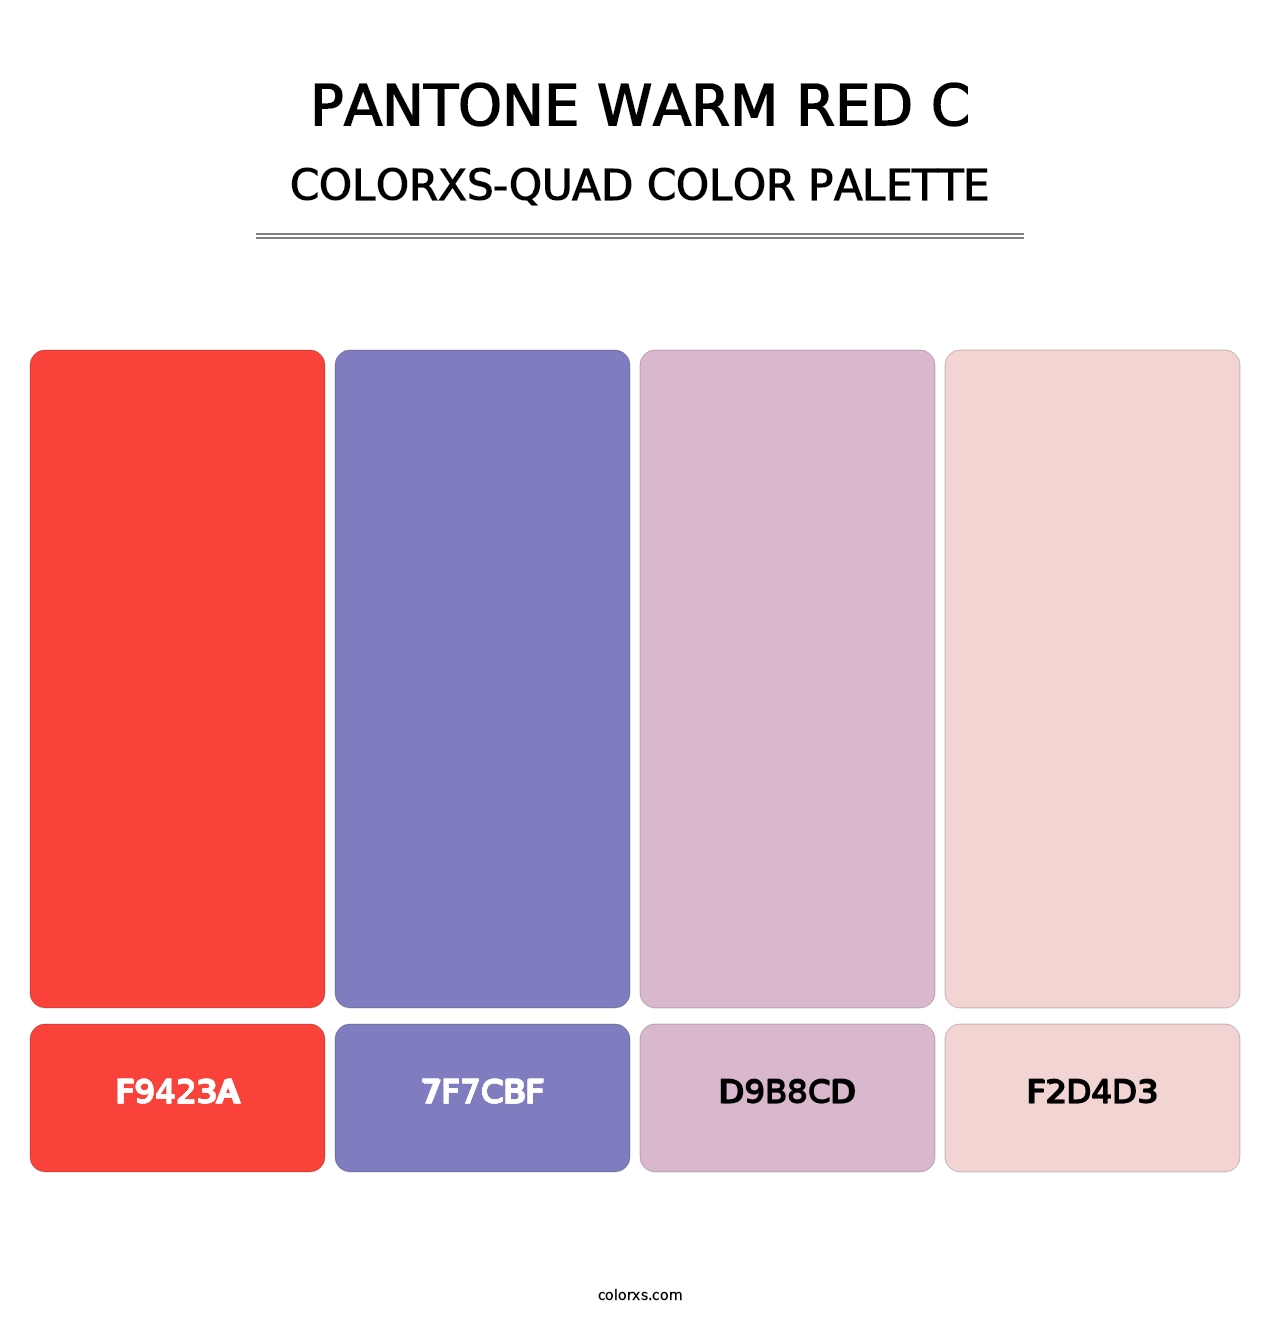 PANTONE Warm Red C - Colorxs Quad Palette